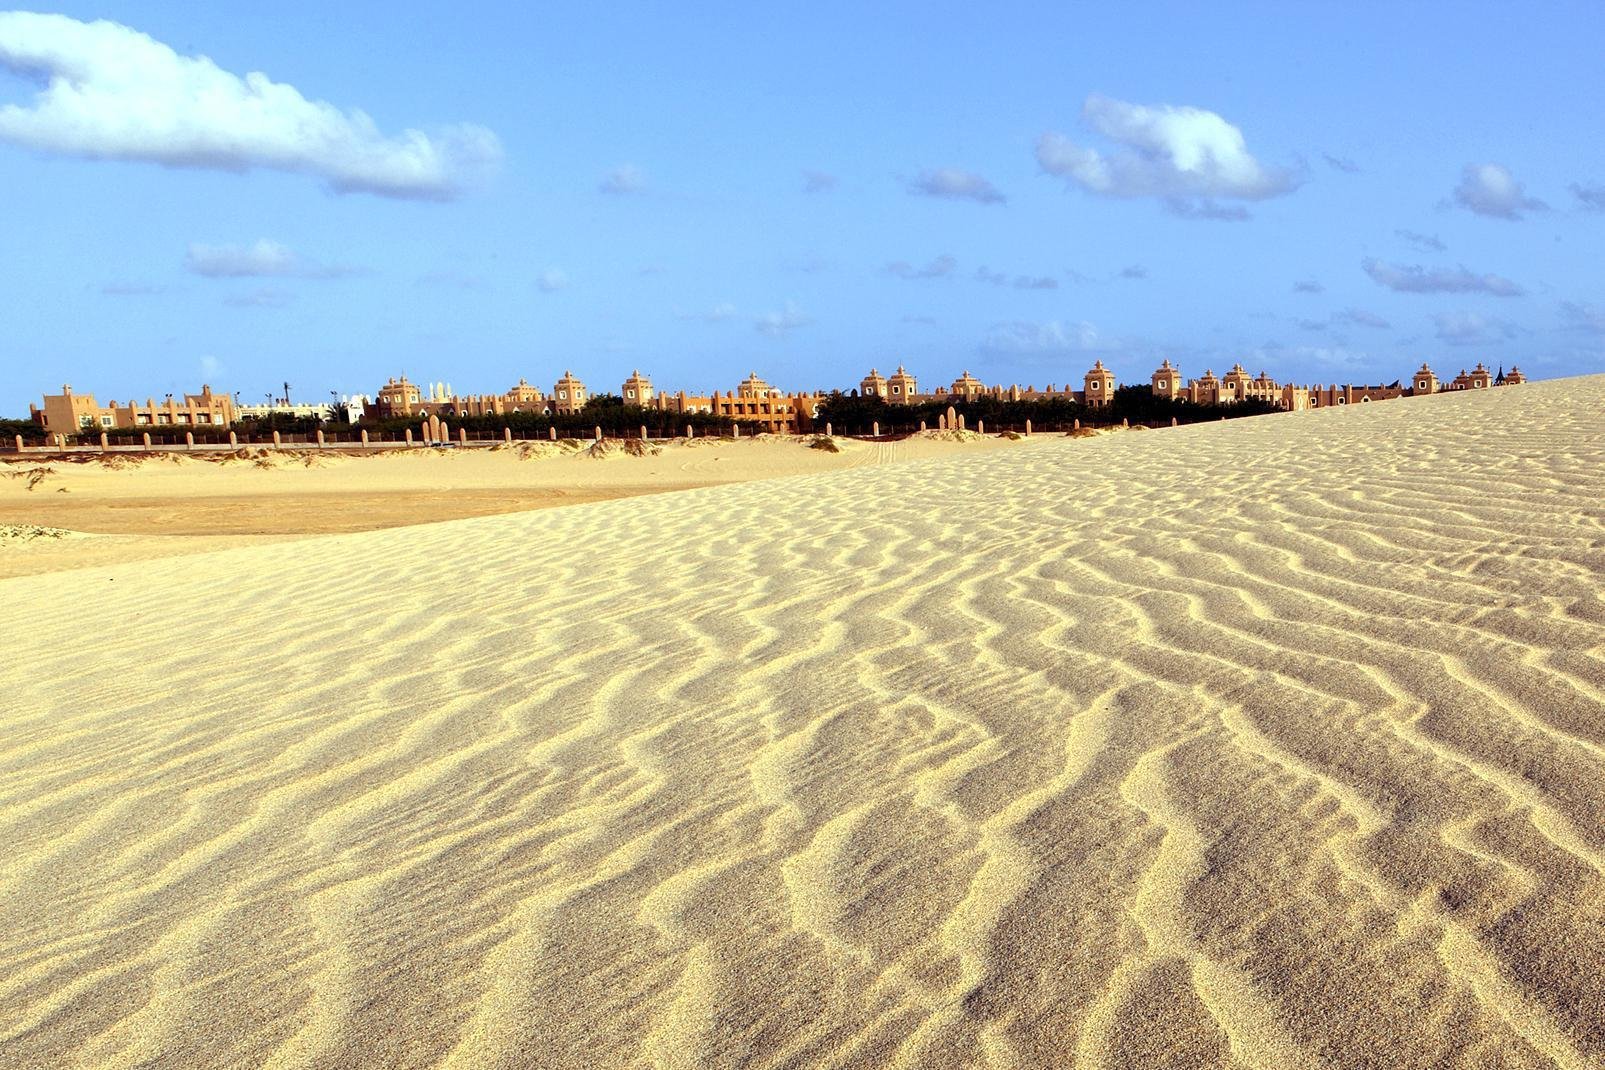 Sal es la más conocida de las islas de Cabo Verde gracias a su aeropuerto internacional. A Sal no se viene por sus paisajes, su relieve es plano y la isla es árida, seca. El punto más alto de la isla es el Monte Grande (406 metros). Pero Sal posee preciosas playas de arena fina. La isla mide 29,7 km de norte a sur y 11,8 km de este a oeste. Actualmente, la isla cuenta con el mayor número ...